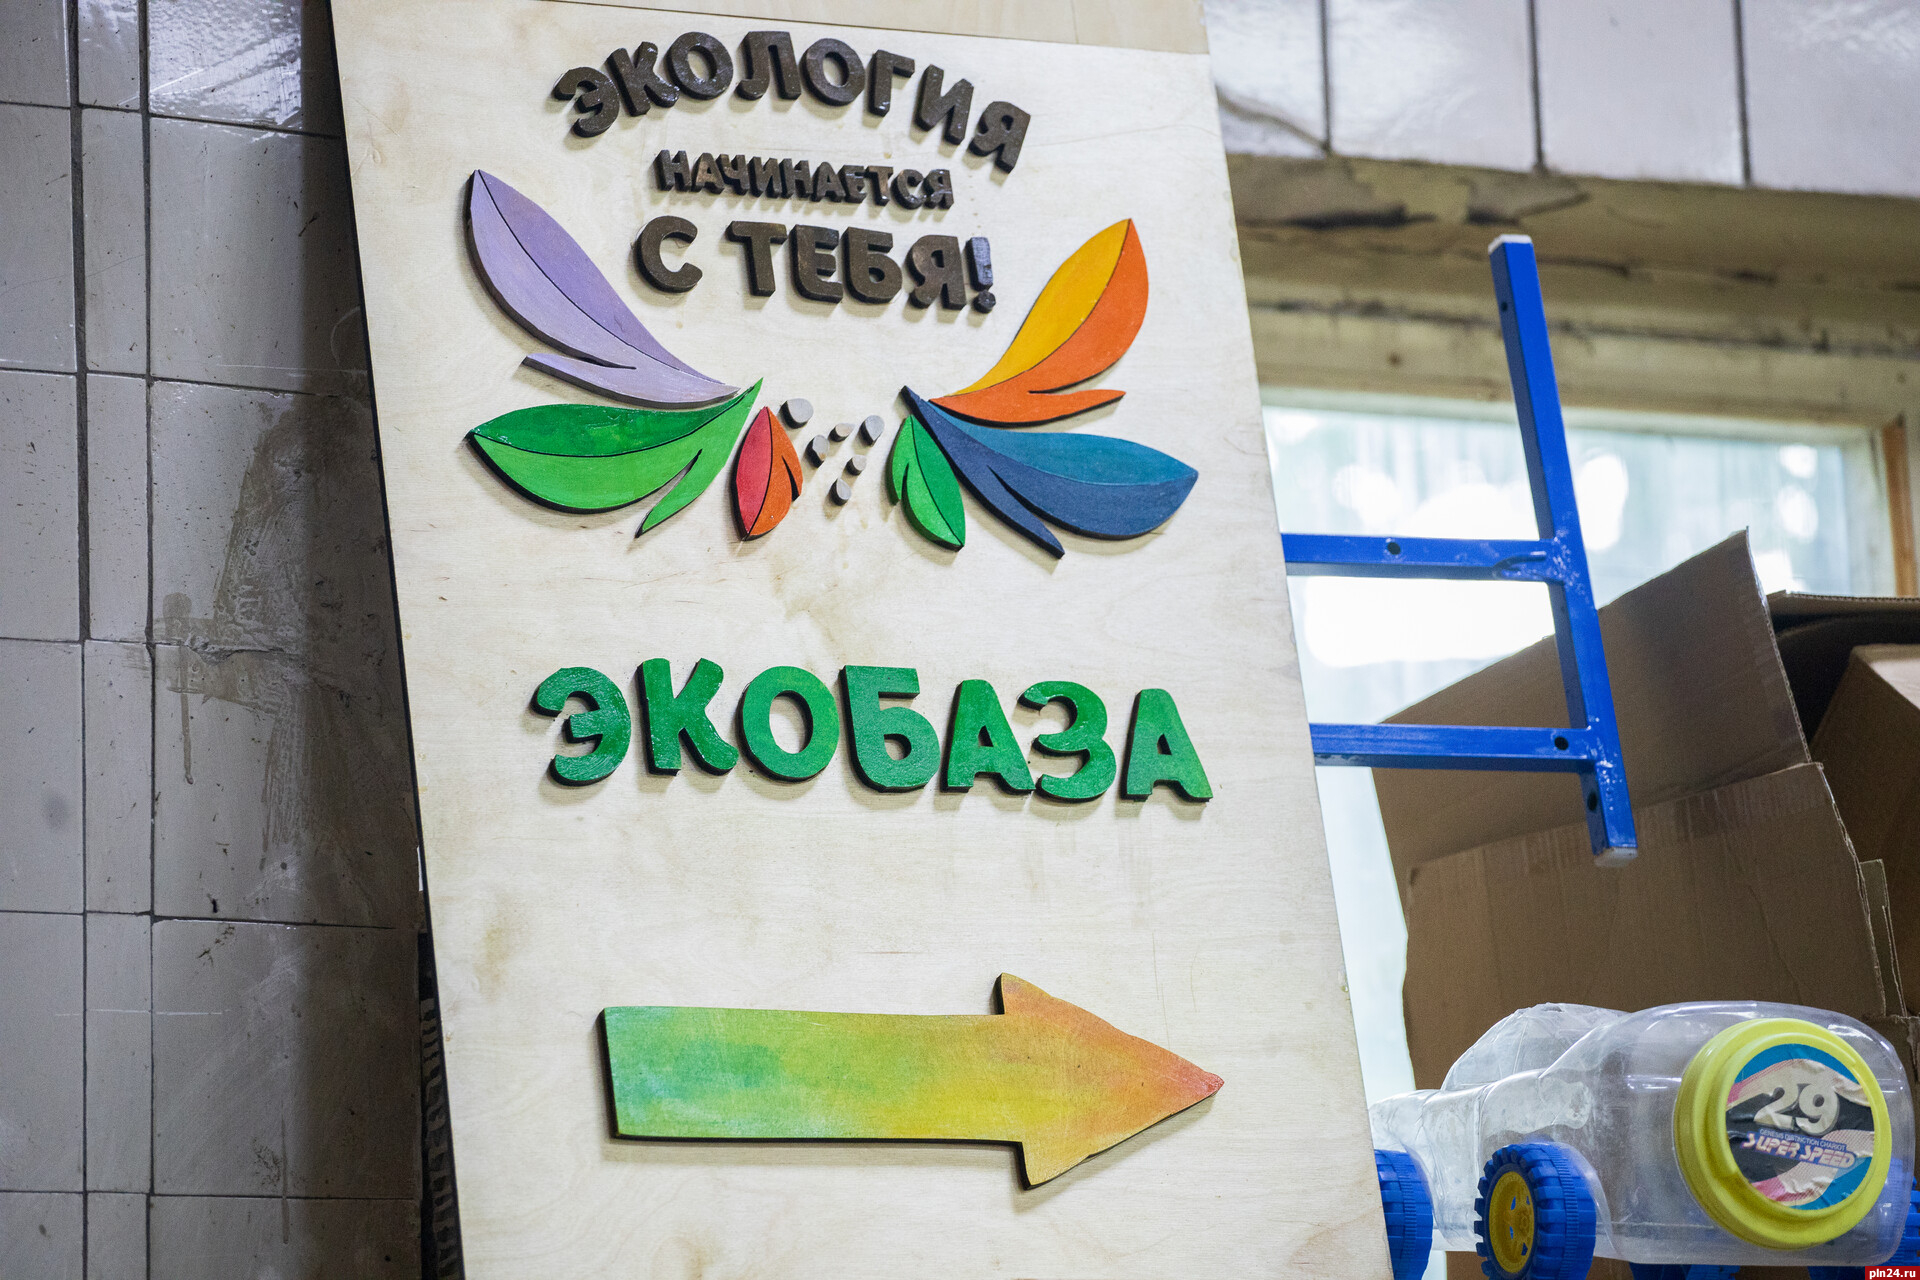 Объединяют людей и разделяют отходы: как устроена «ЭКОбаза Псков»